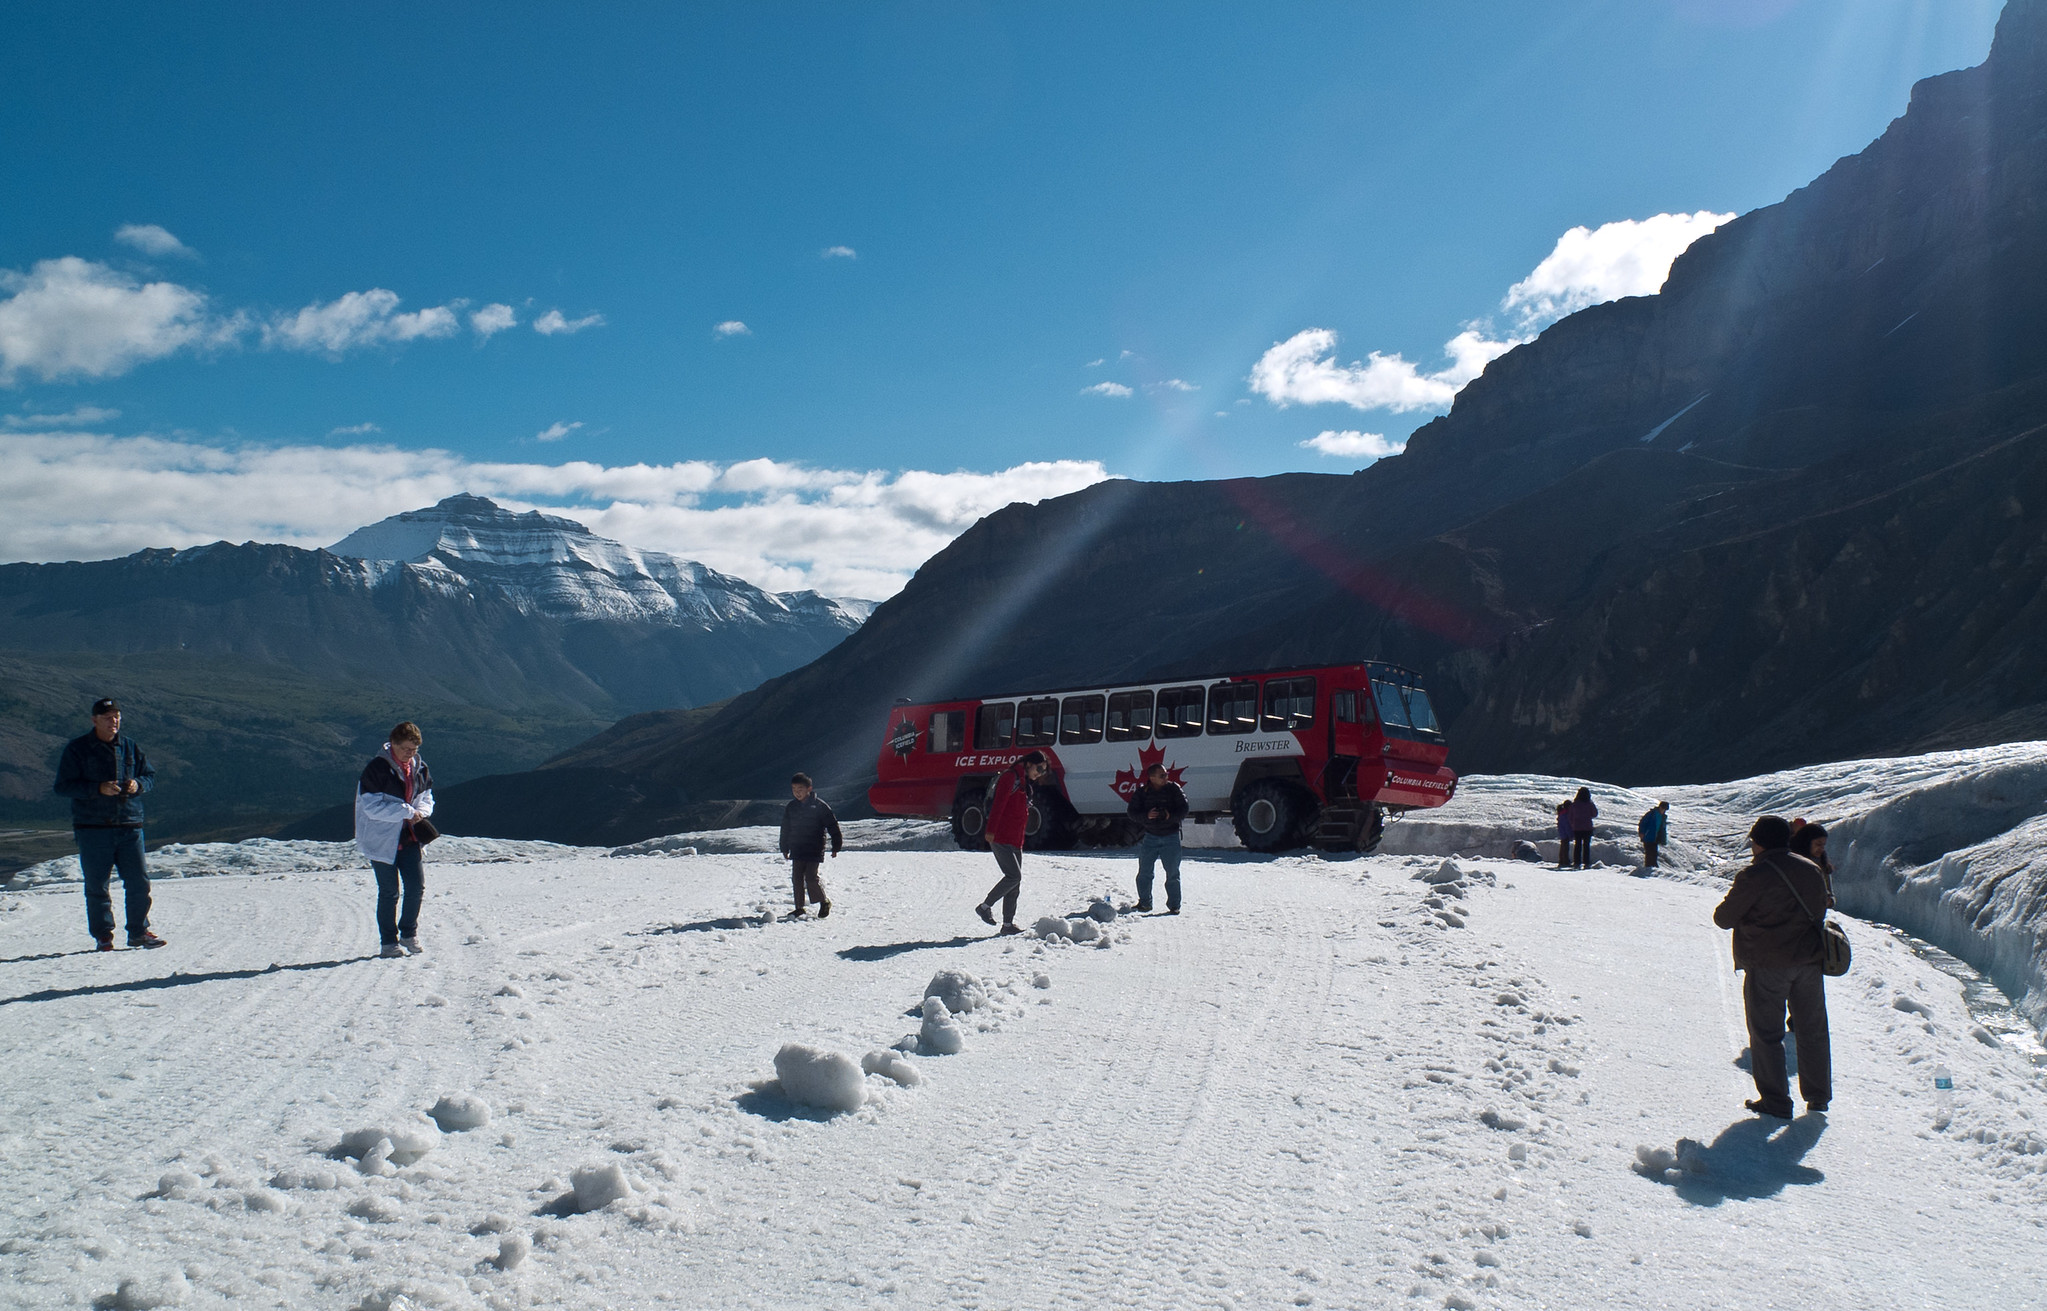 La gente camina por la nieve en las montañas. Un autobús turístico está estacionado detrás de ellos.